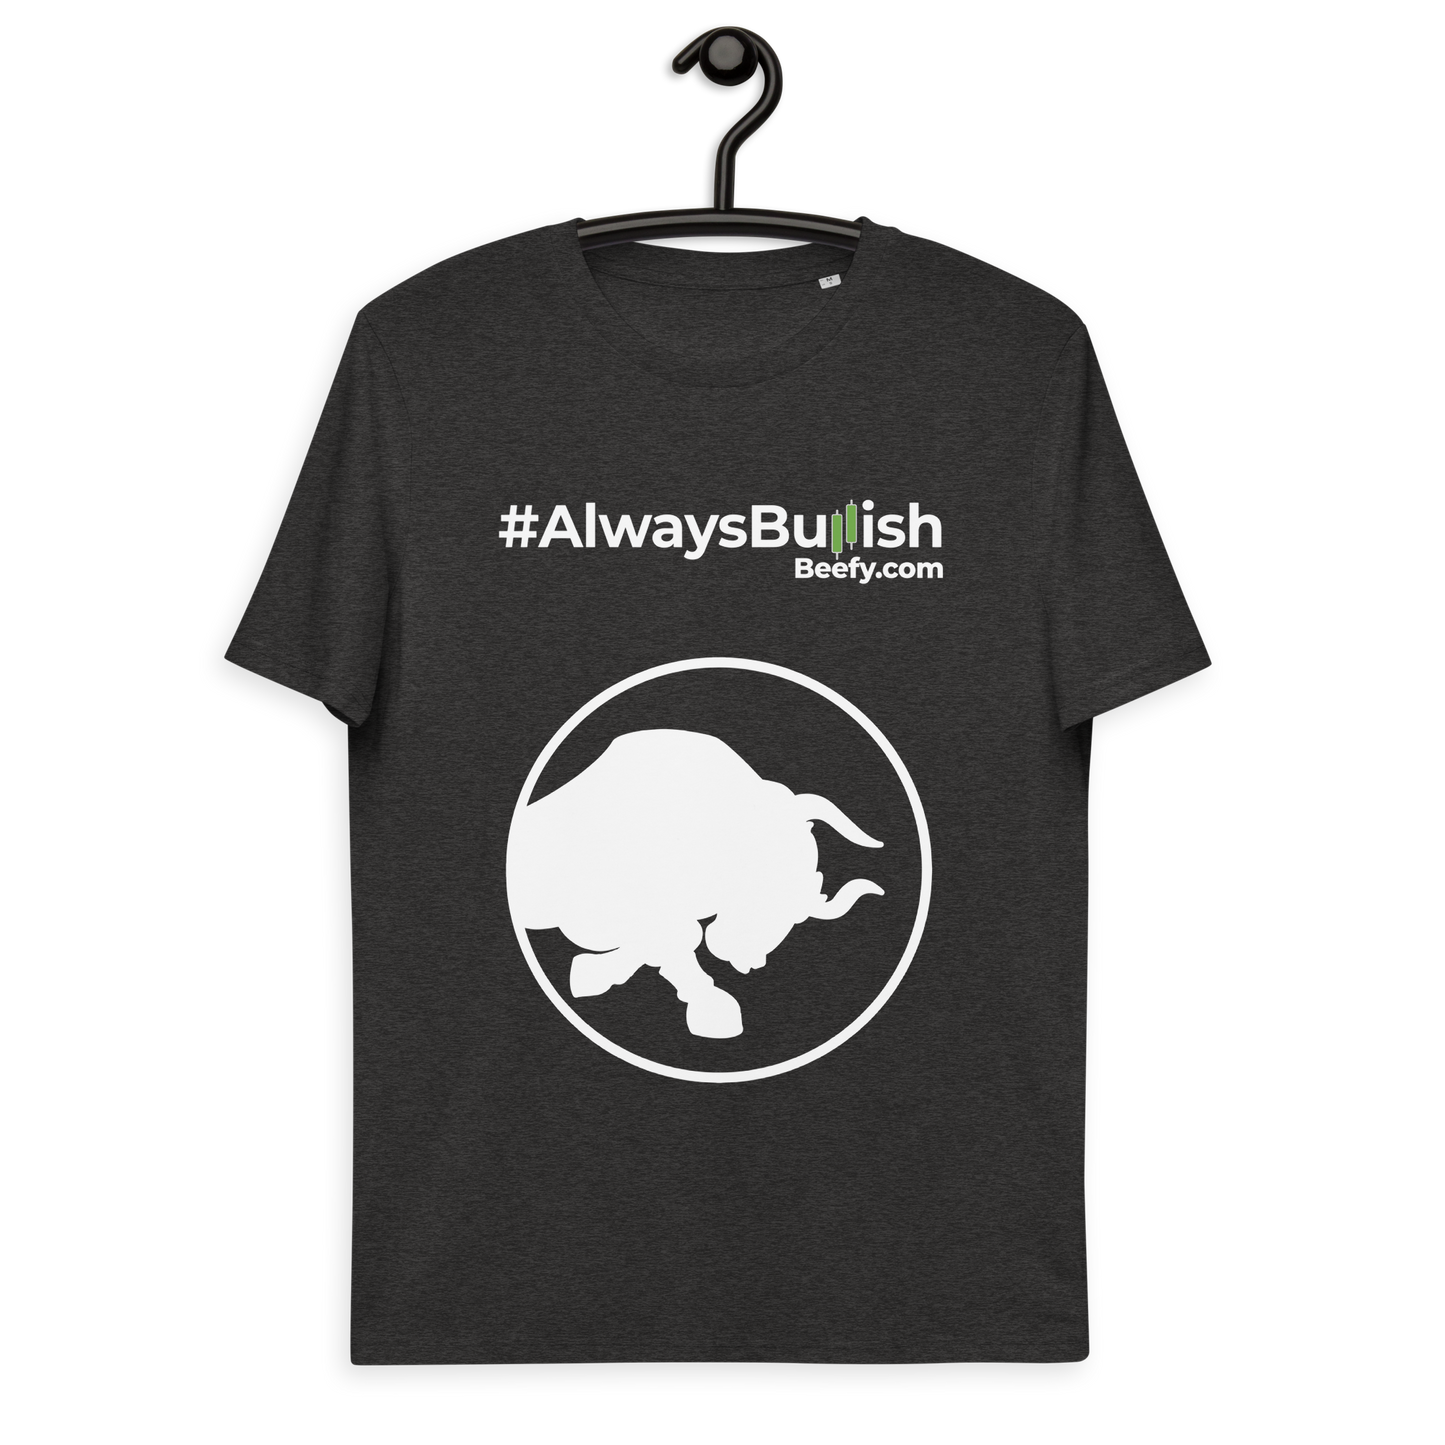 Always Bullish t-shirt